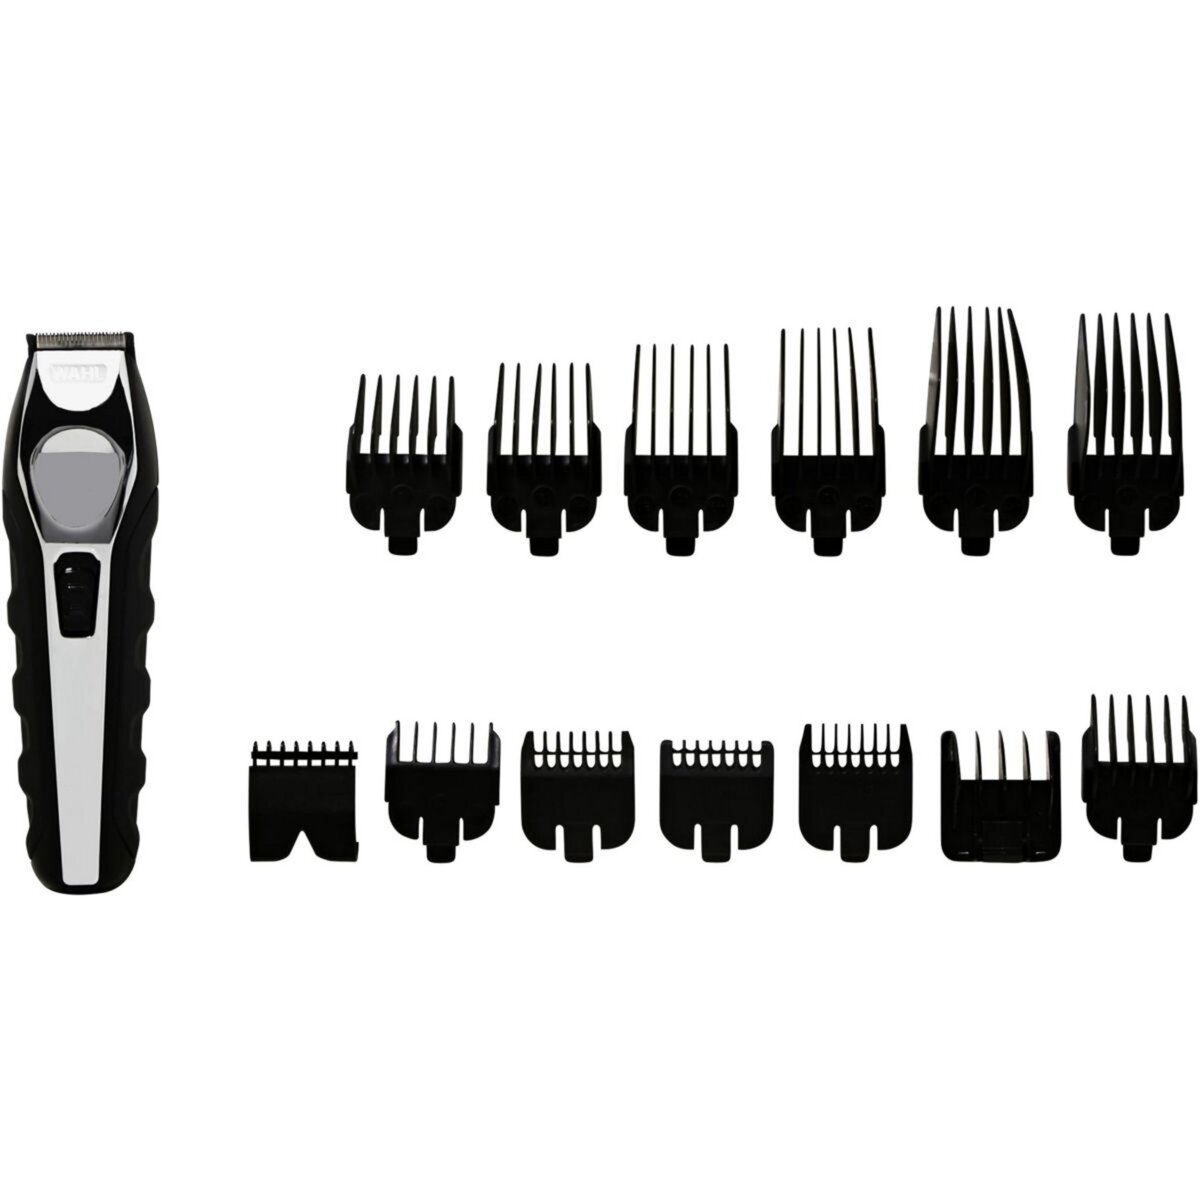 WAHL Tondeuse multifonction Total Beard grooming kit